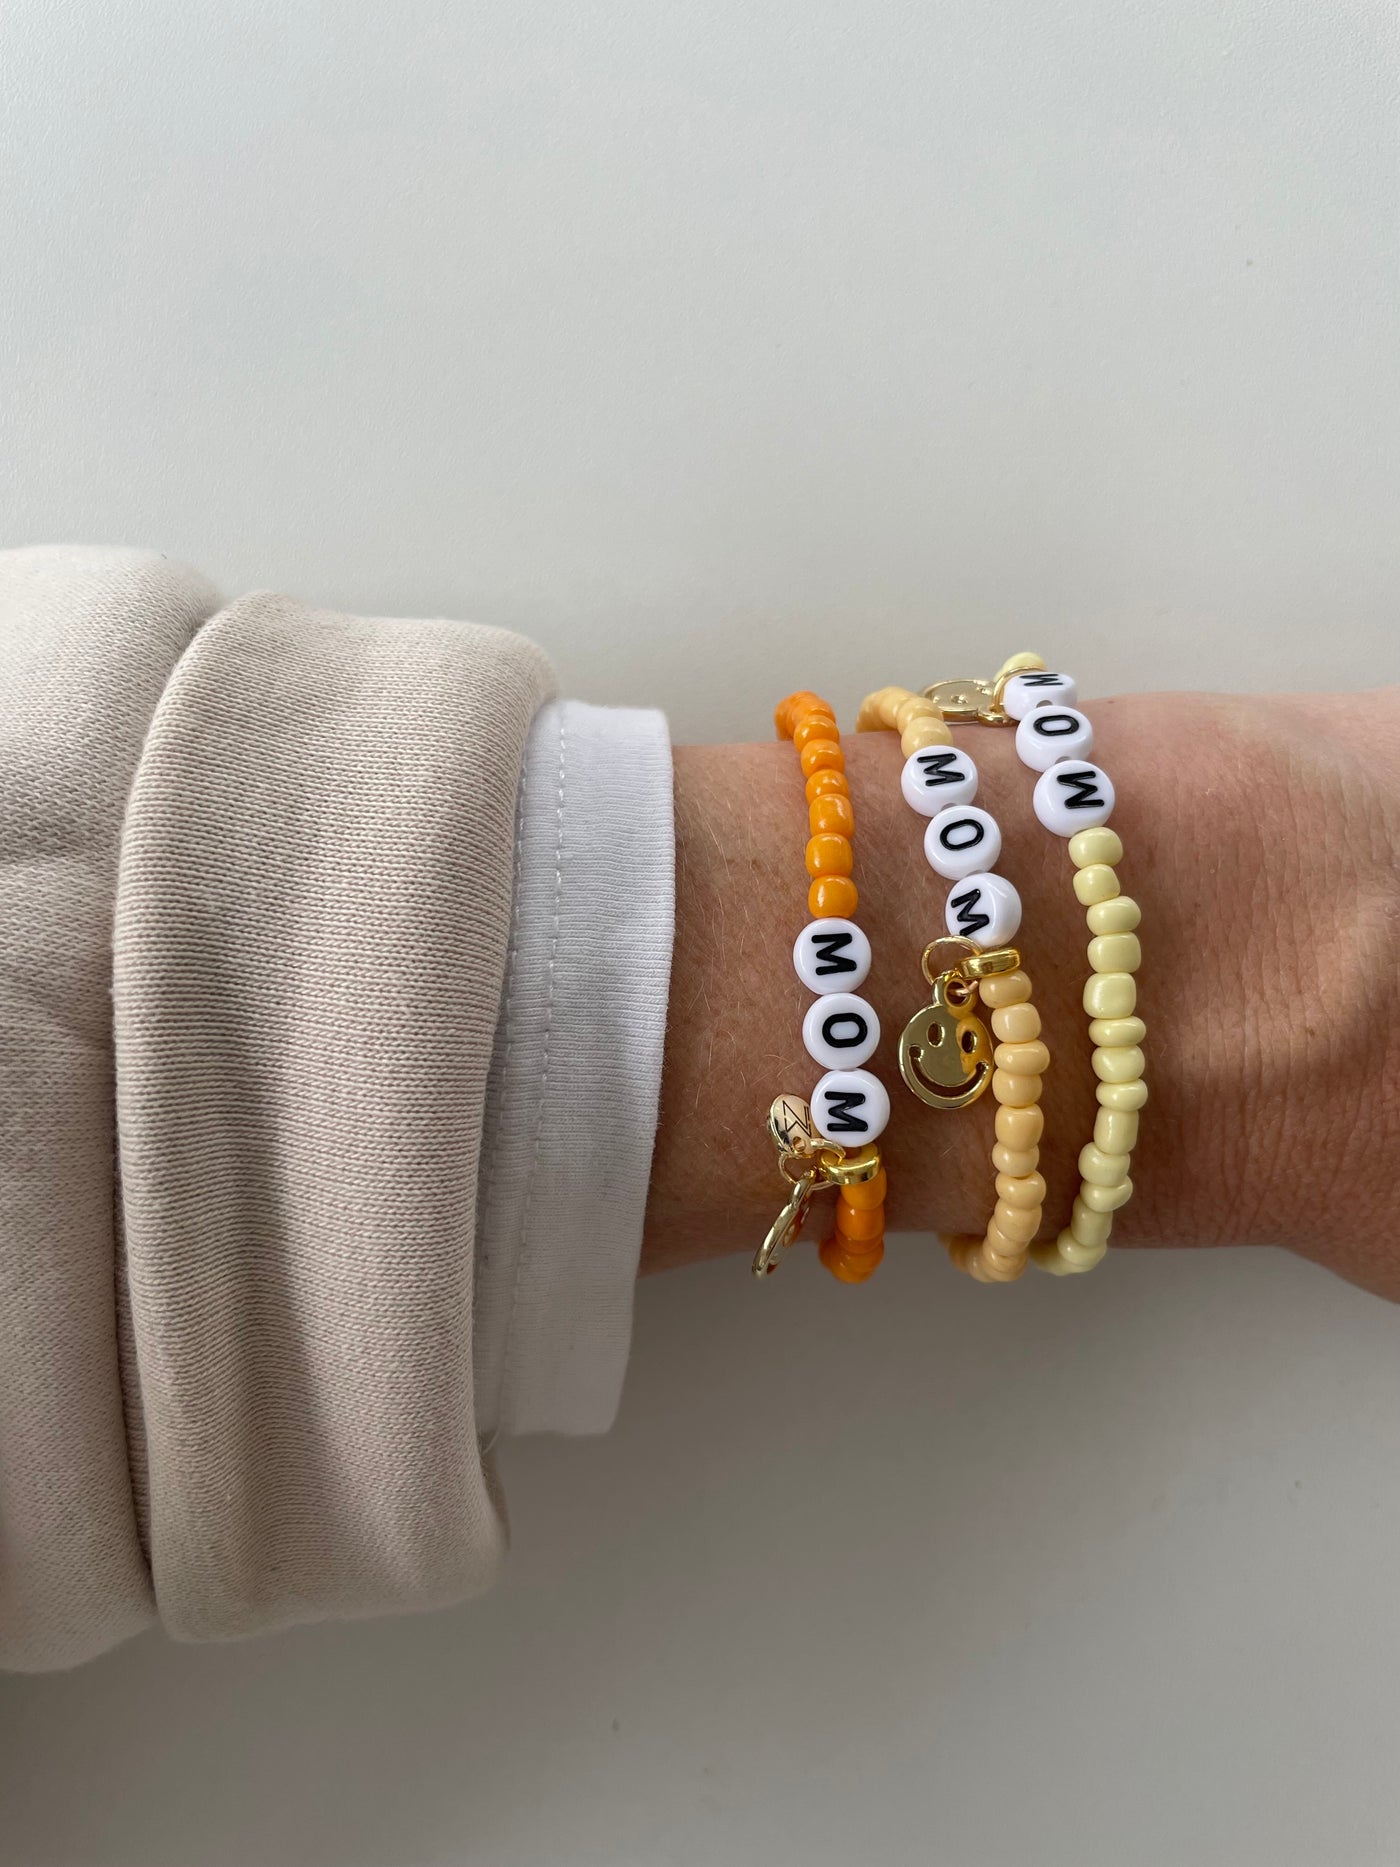 Glasperlen-Armband „Smiley MOM“ in verschiedenen Farben